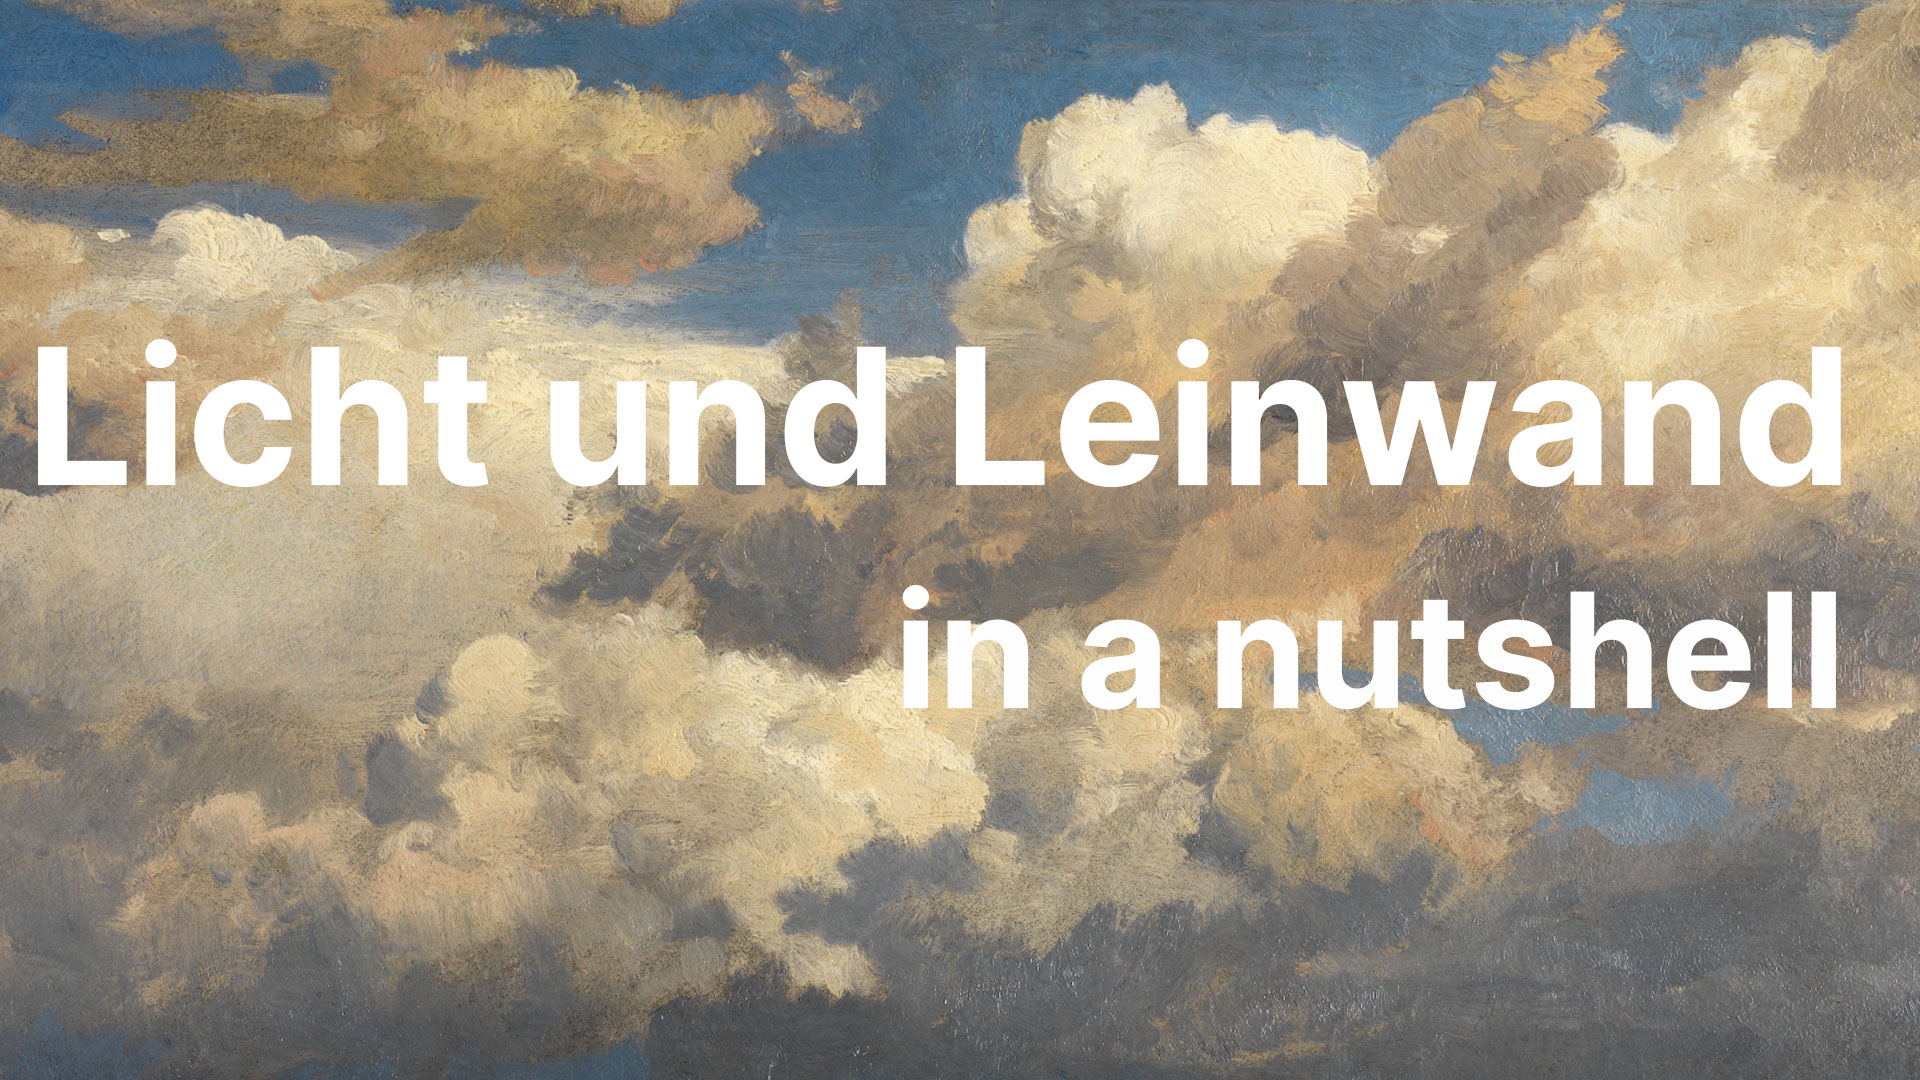 Abbildung des Werks "Wolkenstudie" von Johann Wilhelm Schirmer, die einen wolkigen Himmel zeigt, und mit dem Schriftzug und Leinwand in a nutshell.